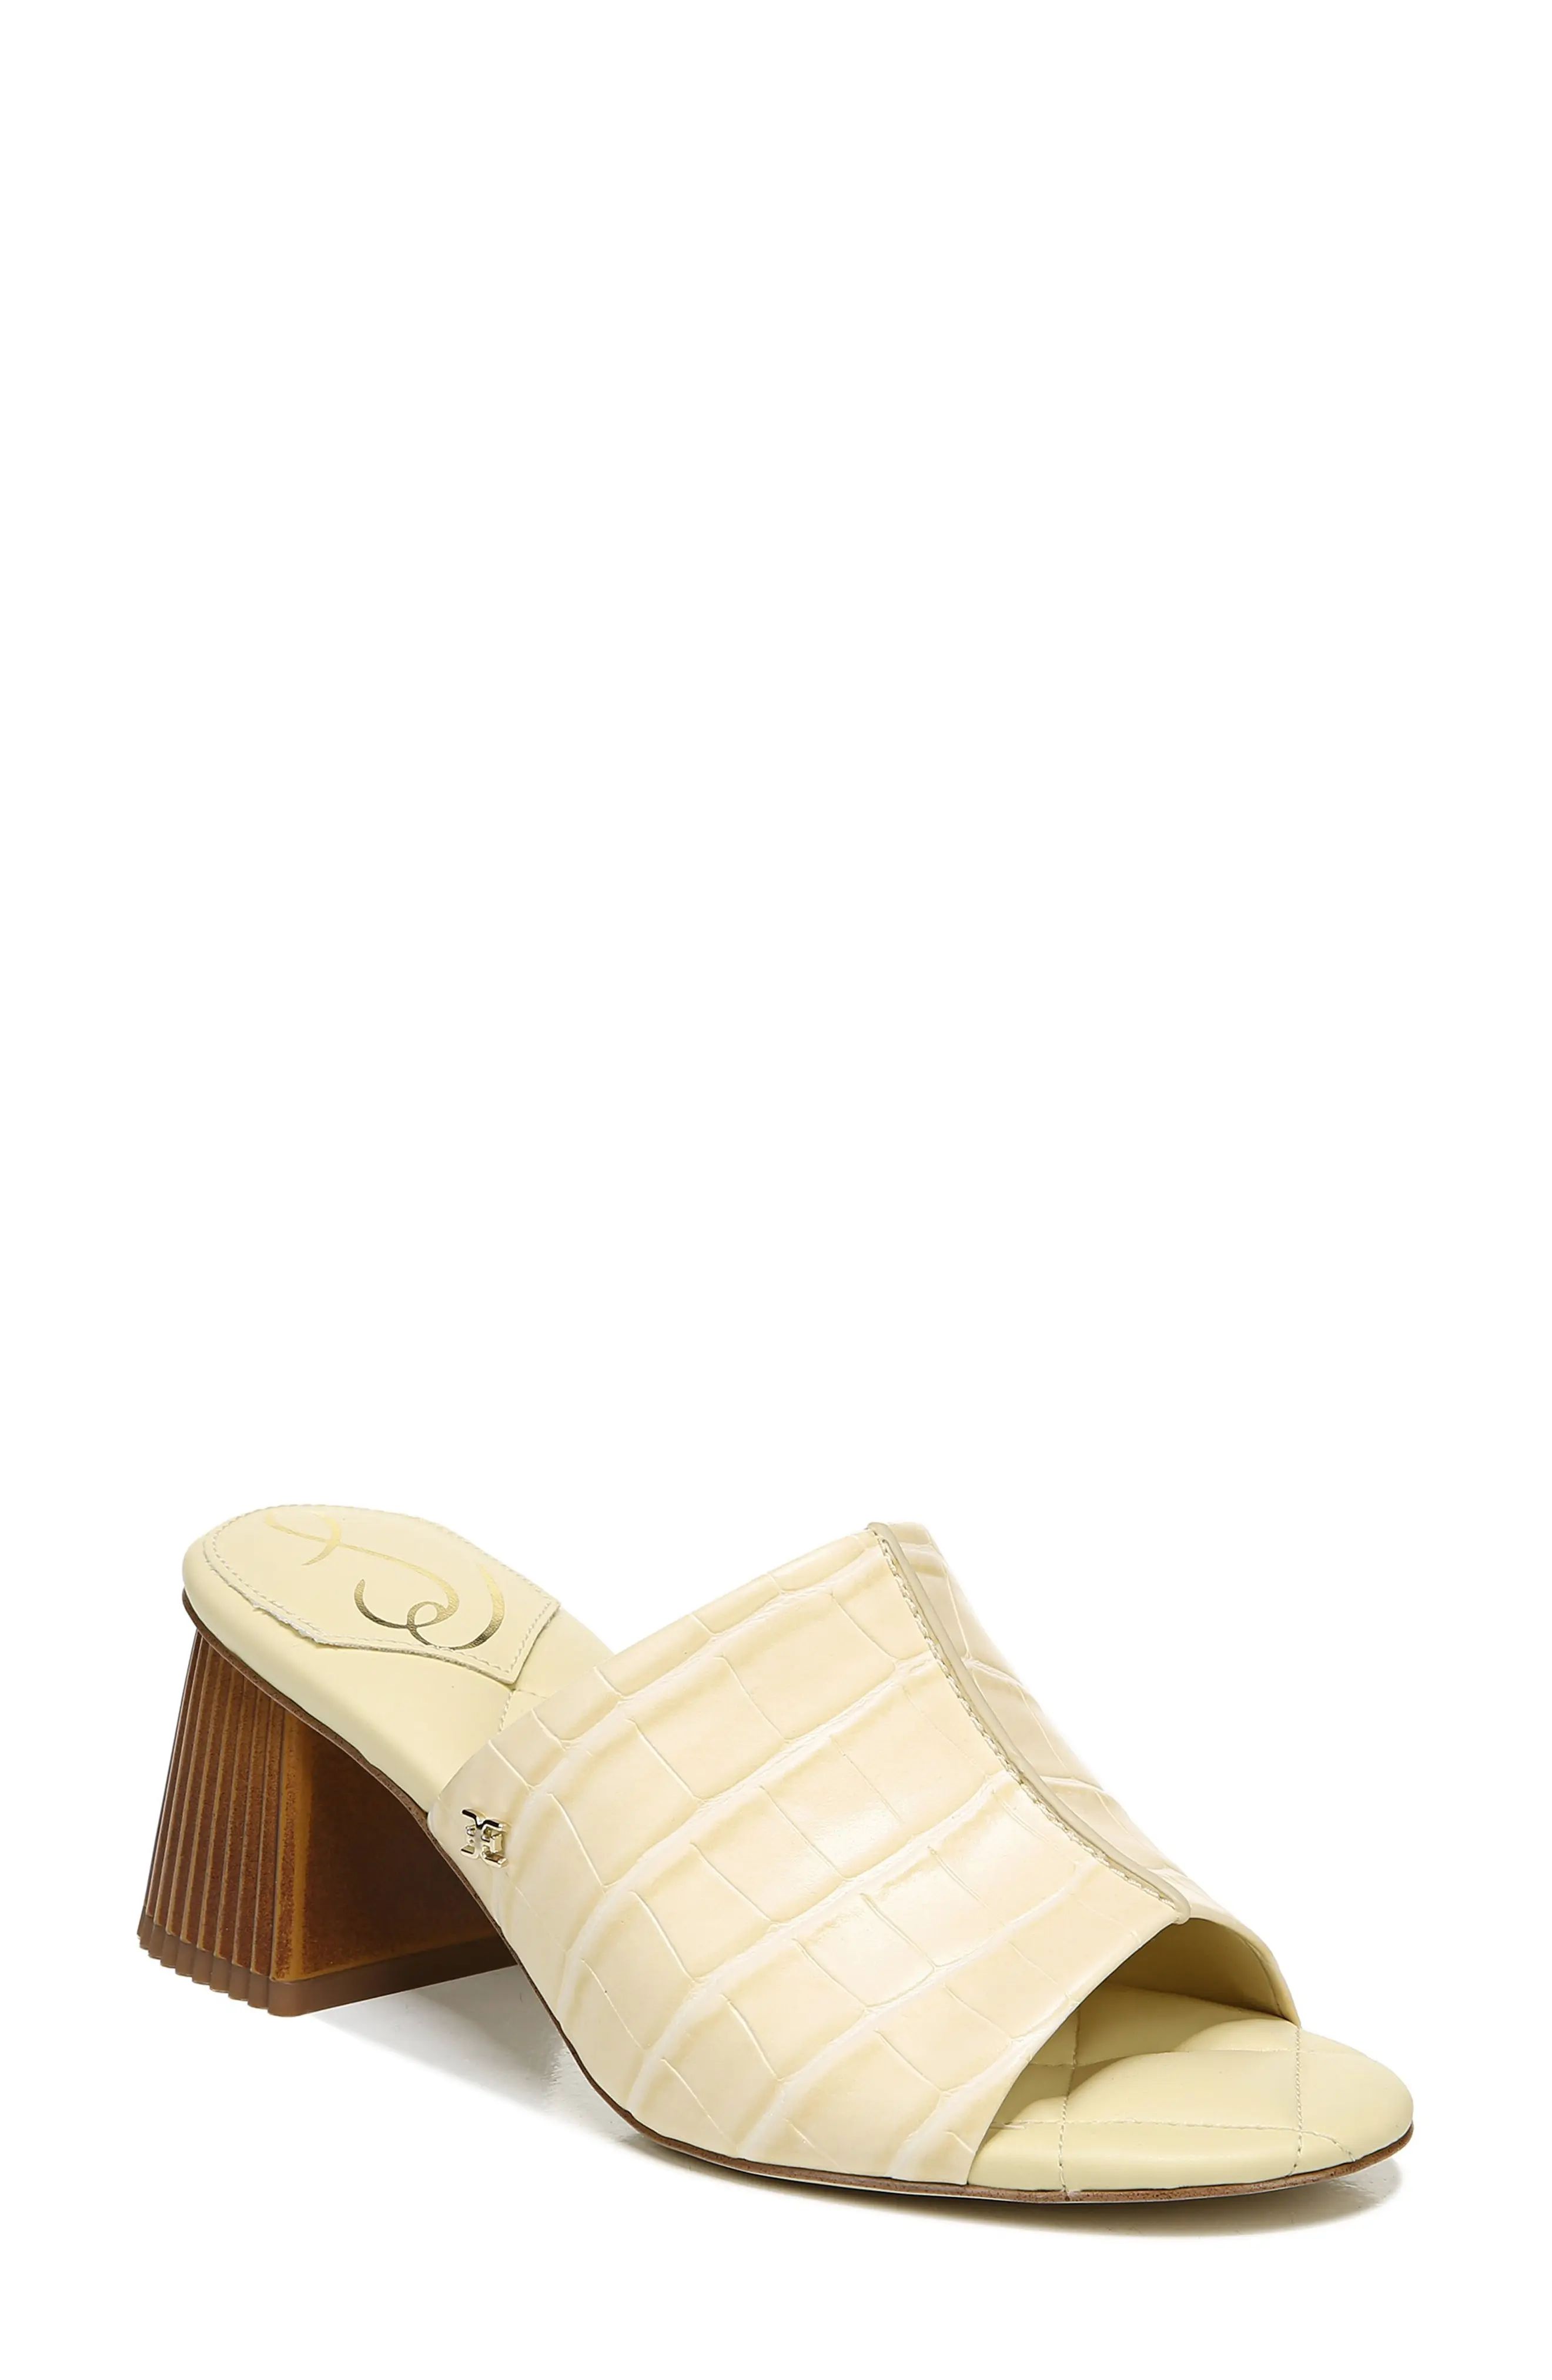 Women's Sam Edelman Sonya Slide Sandal, Size 7 M - Ivory | Nordstrom